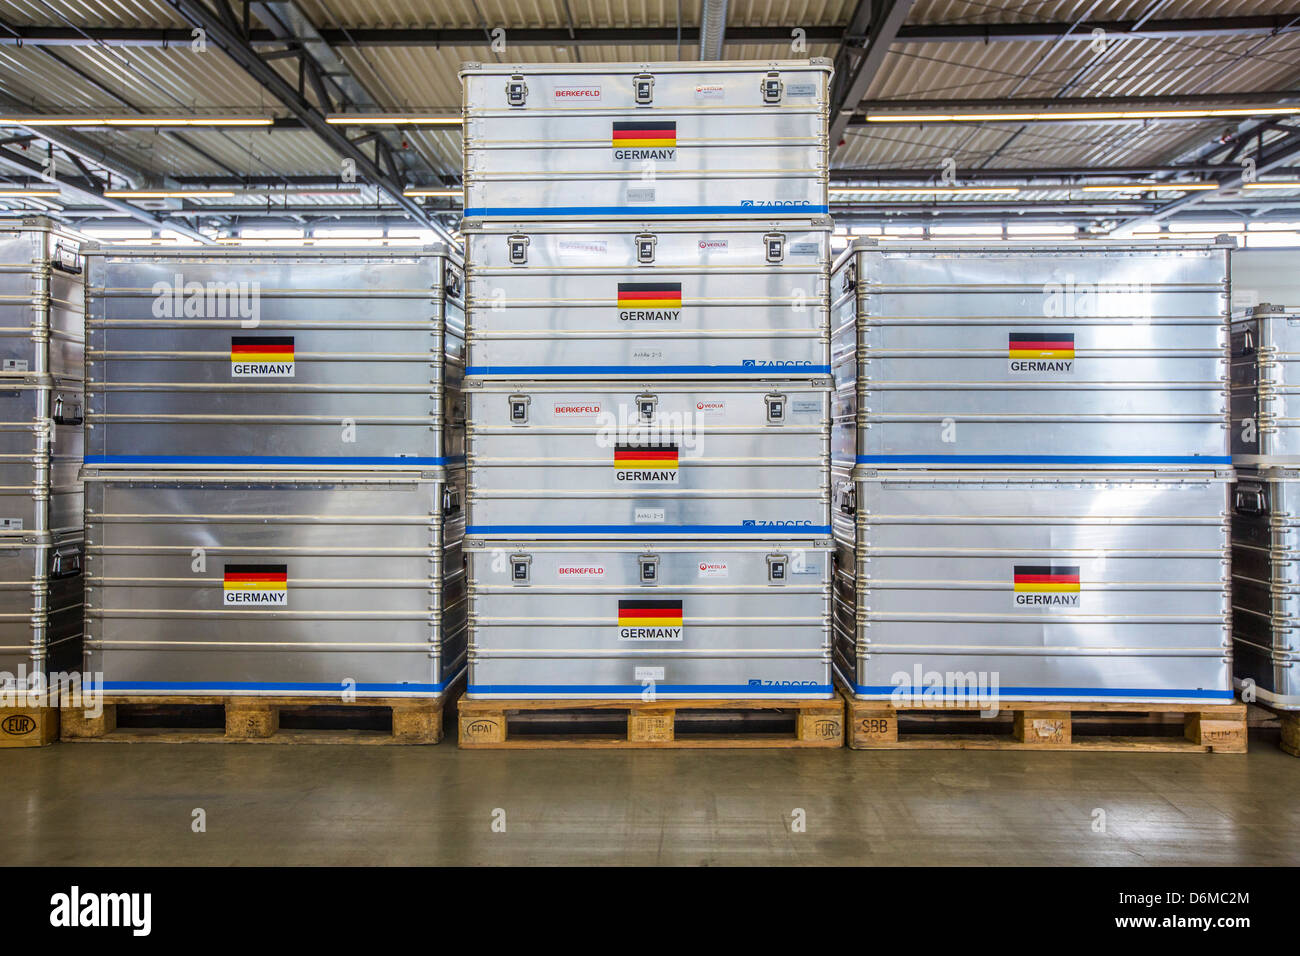 Aluminium-Transportboxen für Notfallausrüstung. Deutsche Flagge. Deutsche Disaster Relief Team-Einheit, THW. Stockfoto